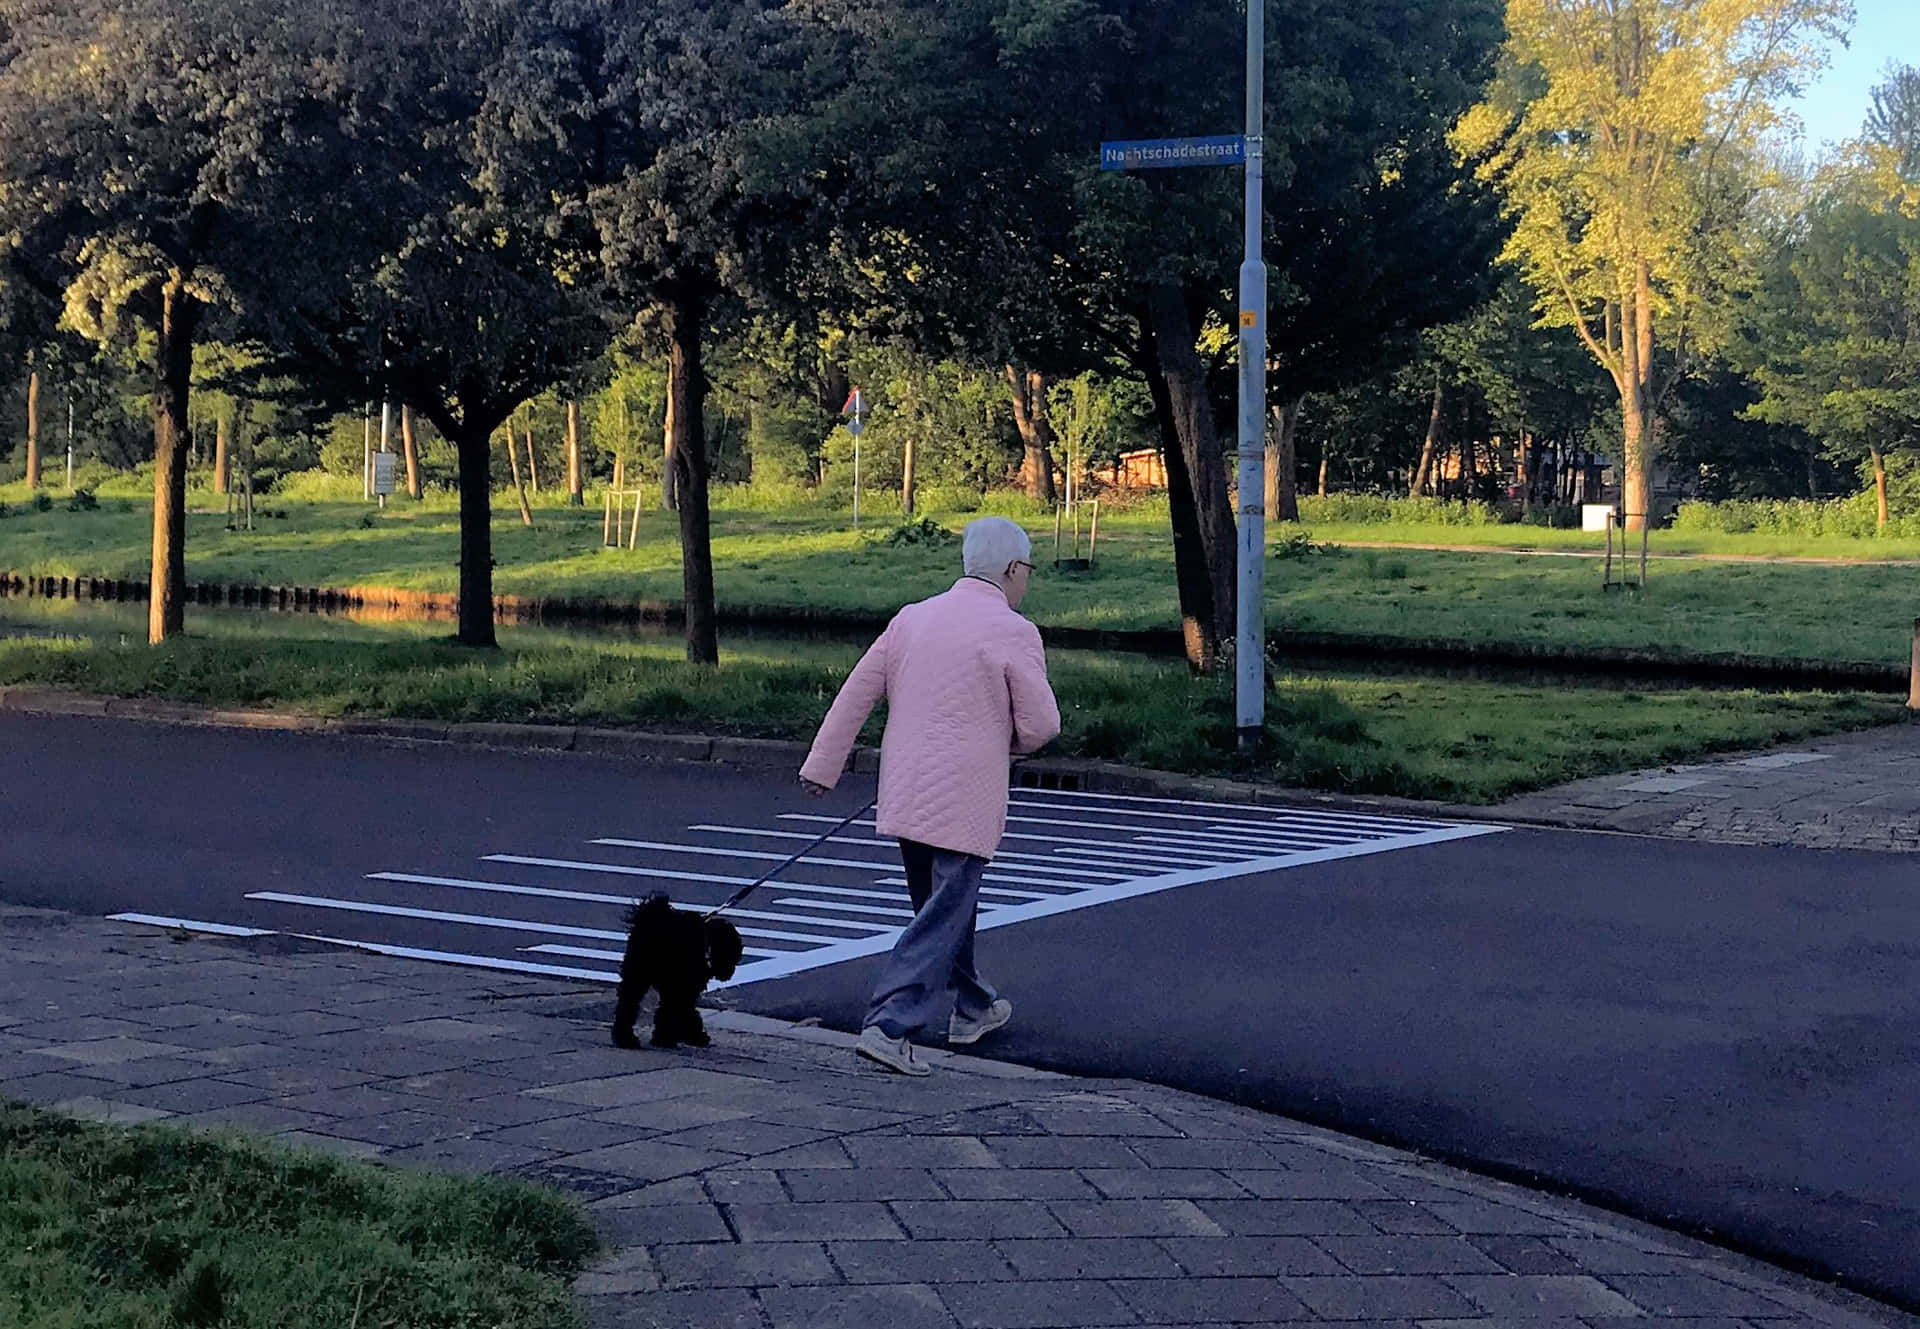 Dog Walking On Pedestrian Lane Picture